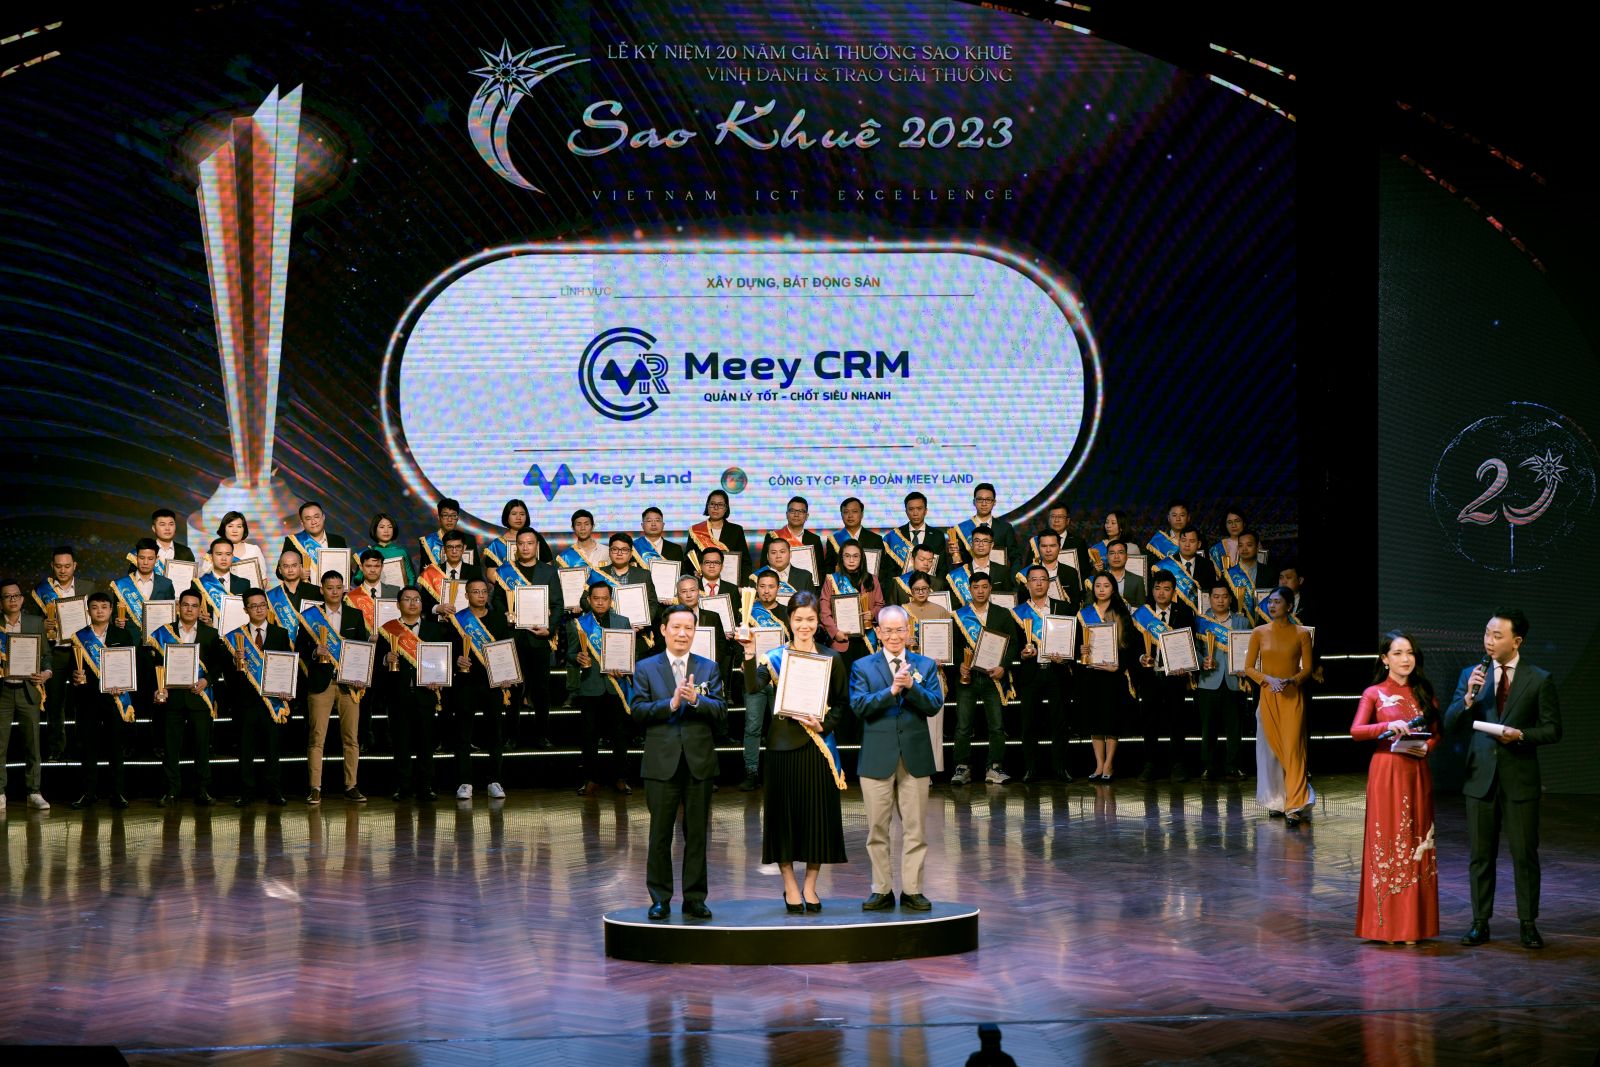 Meey CRM nhận giải thưởng Sao Khuê 2023.